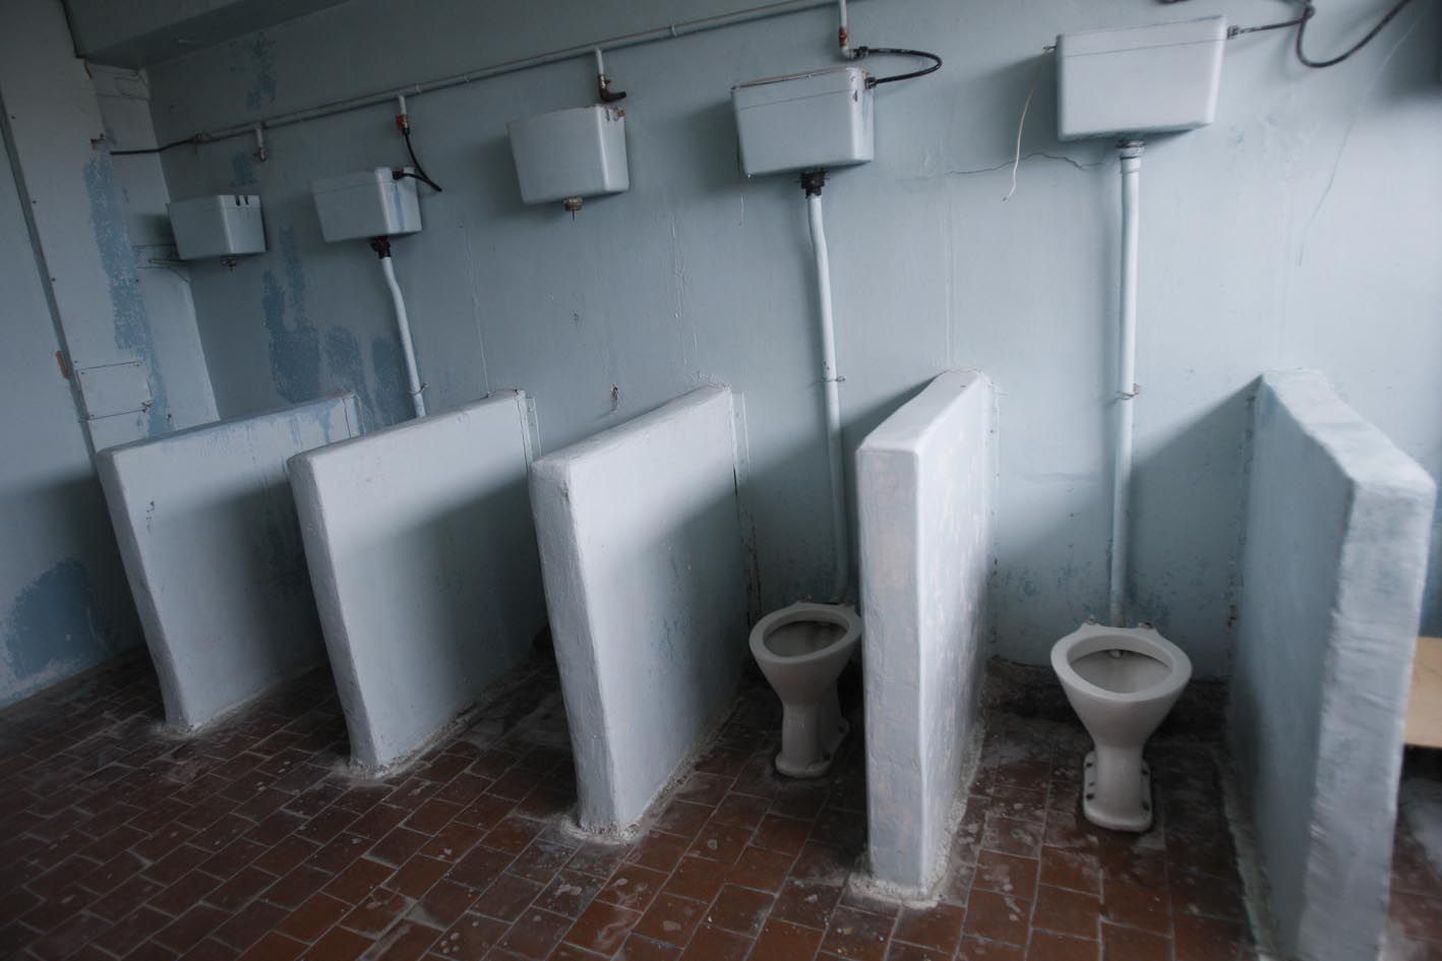 Õudusunenägu: 56 protsenti küsitlusele vastanutest väitis, et nad ei kasuta kooli tualettruumi üldse. Selliseid renoveerimata ja ebasanitaarses seisukorras tualettruume nagu pildil näha, Järvamaa koolides õnneks ei kohta.